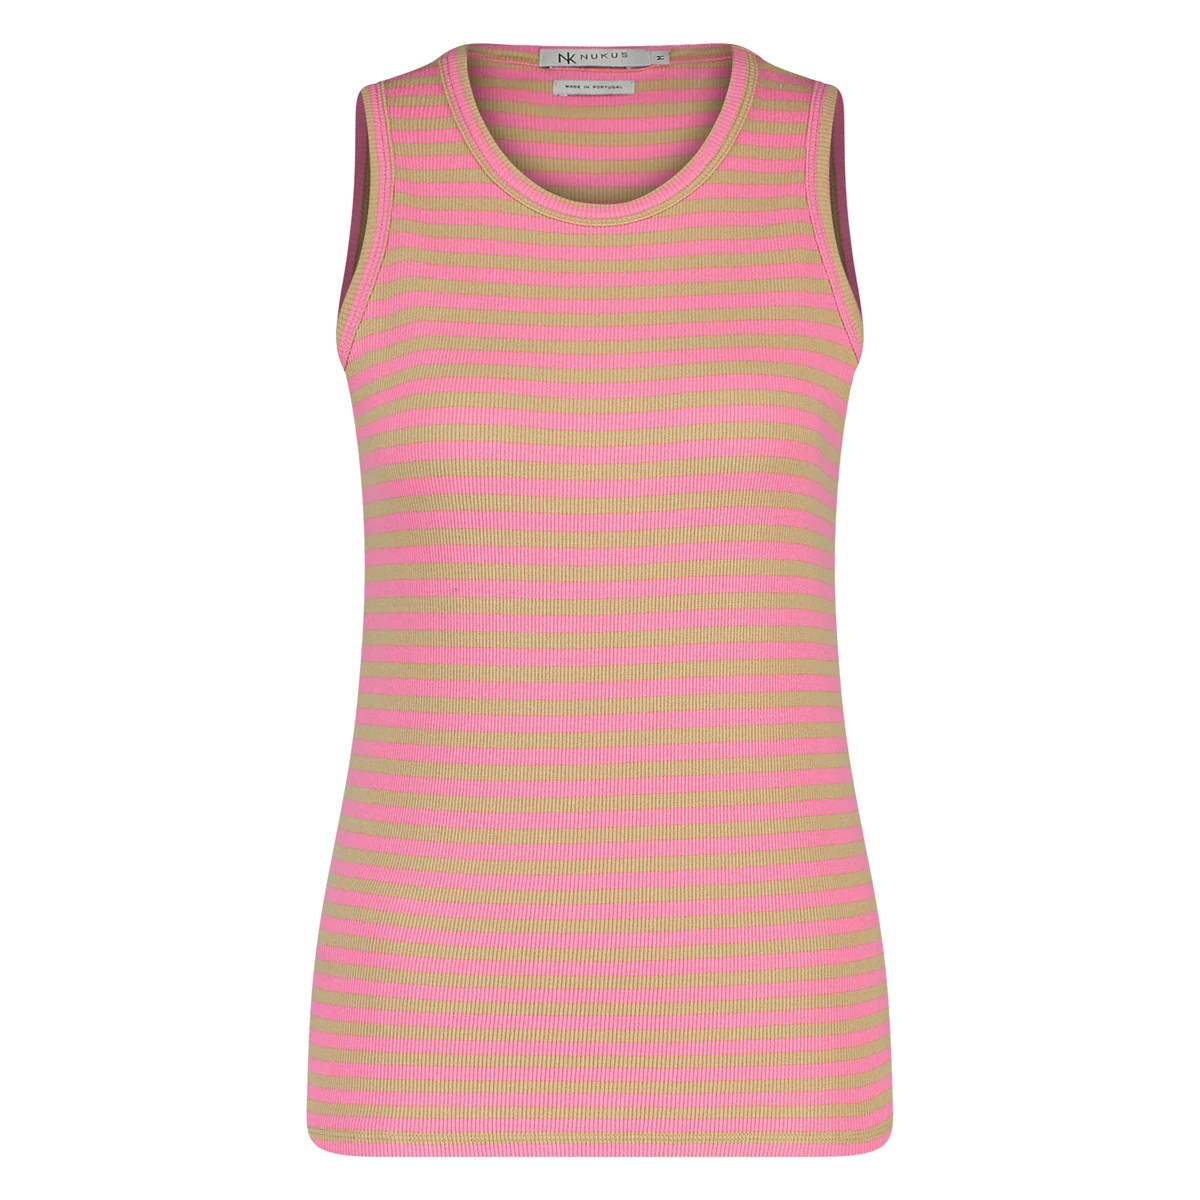 Nukus | Stefania singlet striped pink/sand